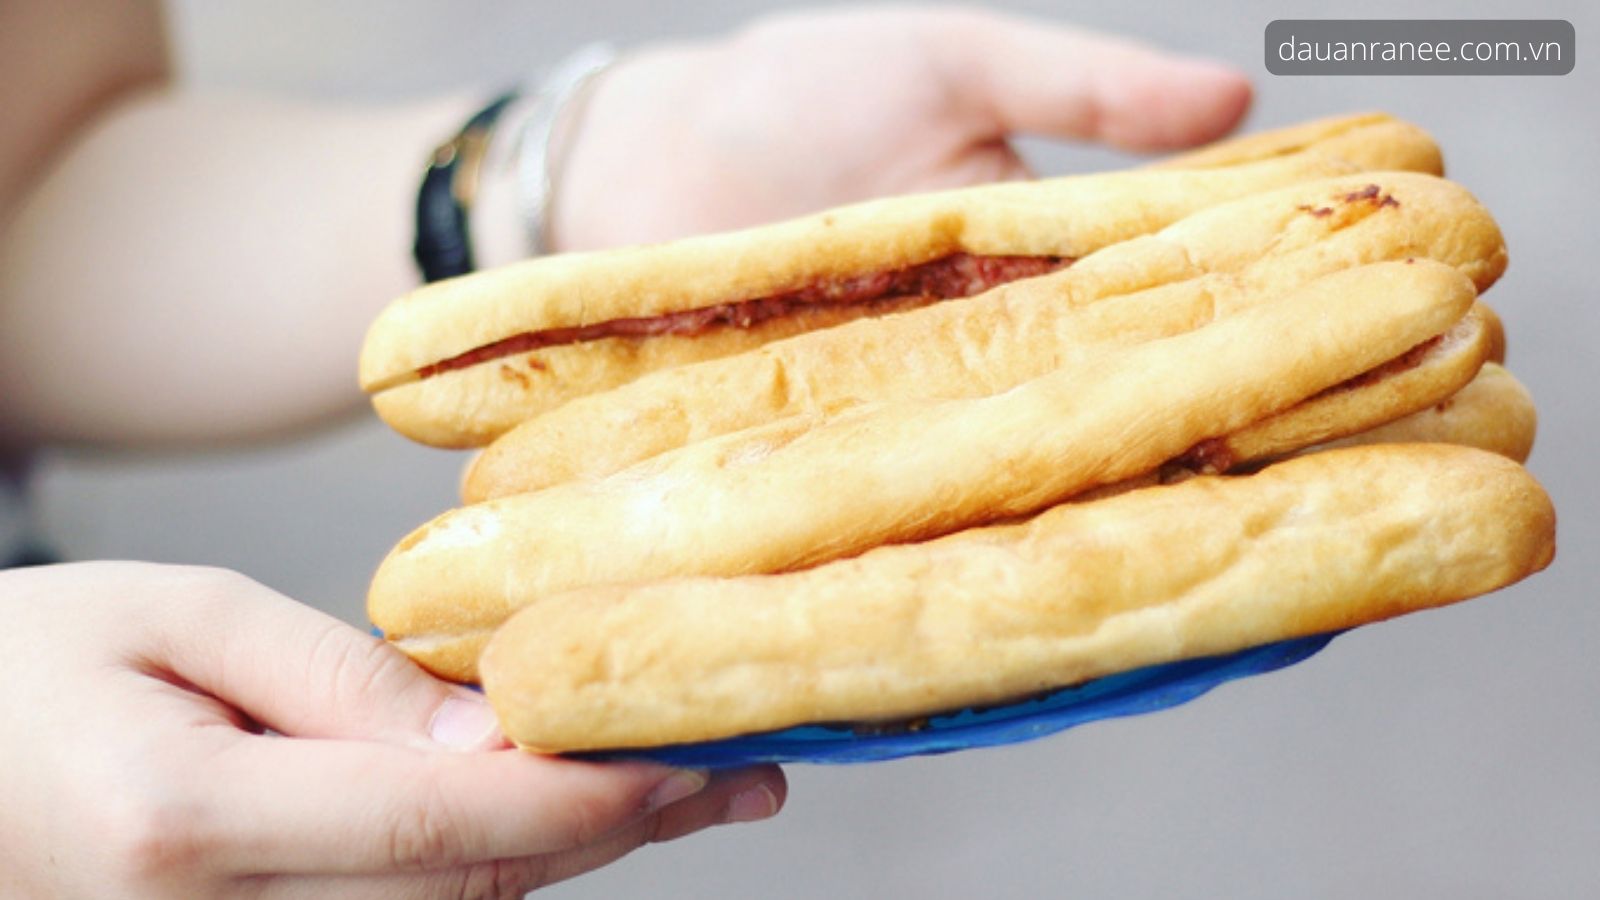 Bánh mỳ cay Hải Phòng - Món ăn vặt đường phố Hải Phòng